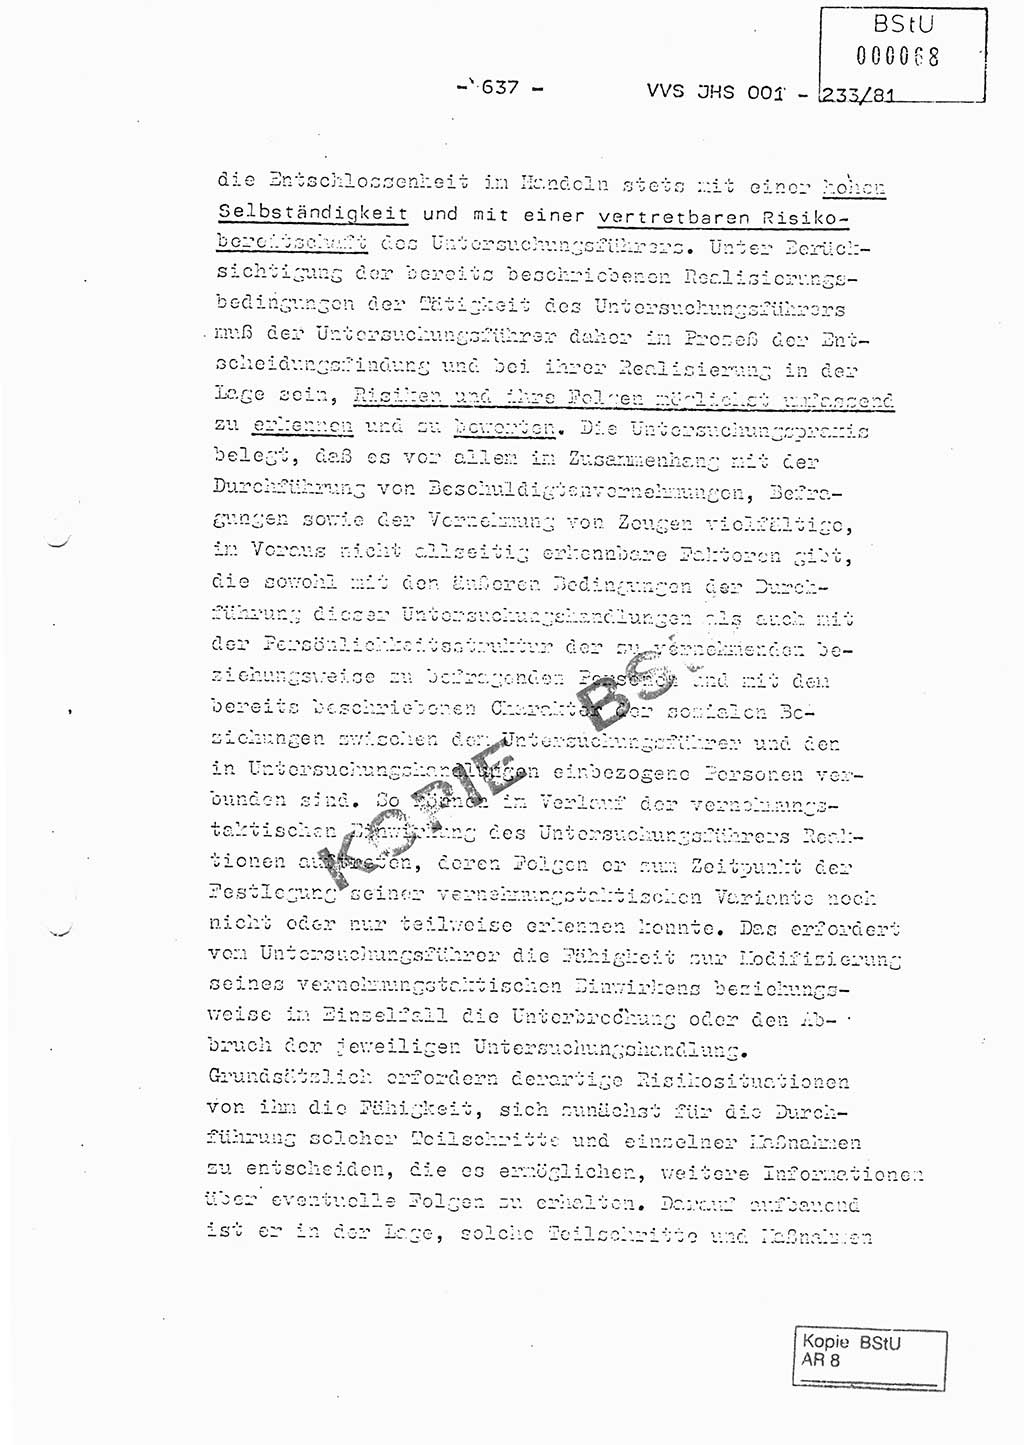 Dissertation Oberstleutnant Horst Zank (JHS), Oberstleutnant Dr. Karl-Heinz Knoblauch (JHS), Oberstleutnant Gustav-Adolf Kowalewski (HA Ⅸ), Oberstleutnant Wolfgang Plötner (HA Ⅸ), Ministerium für Staatssicherheit (MfS) [Deutsche Demokratische Republik (DDR)], Juristische Hochschule (JHS), Vertrauliche Verschlußsache (VVS) o001-233/81, Potsdam 1981, Blatt 637 (Diss. MfS DDR JHS VVS o001-233/81 1981, Bl. 637)